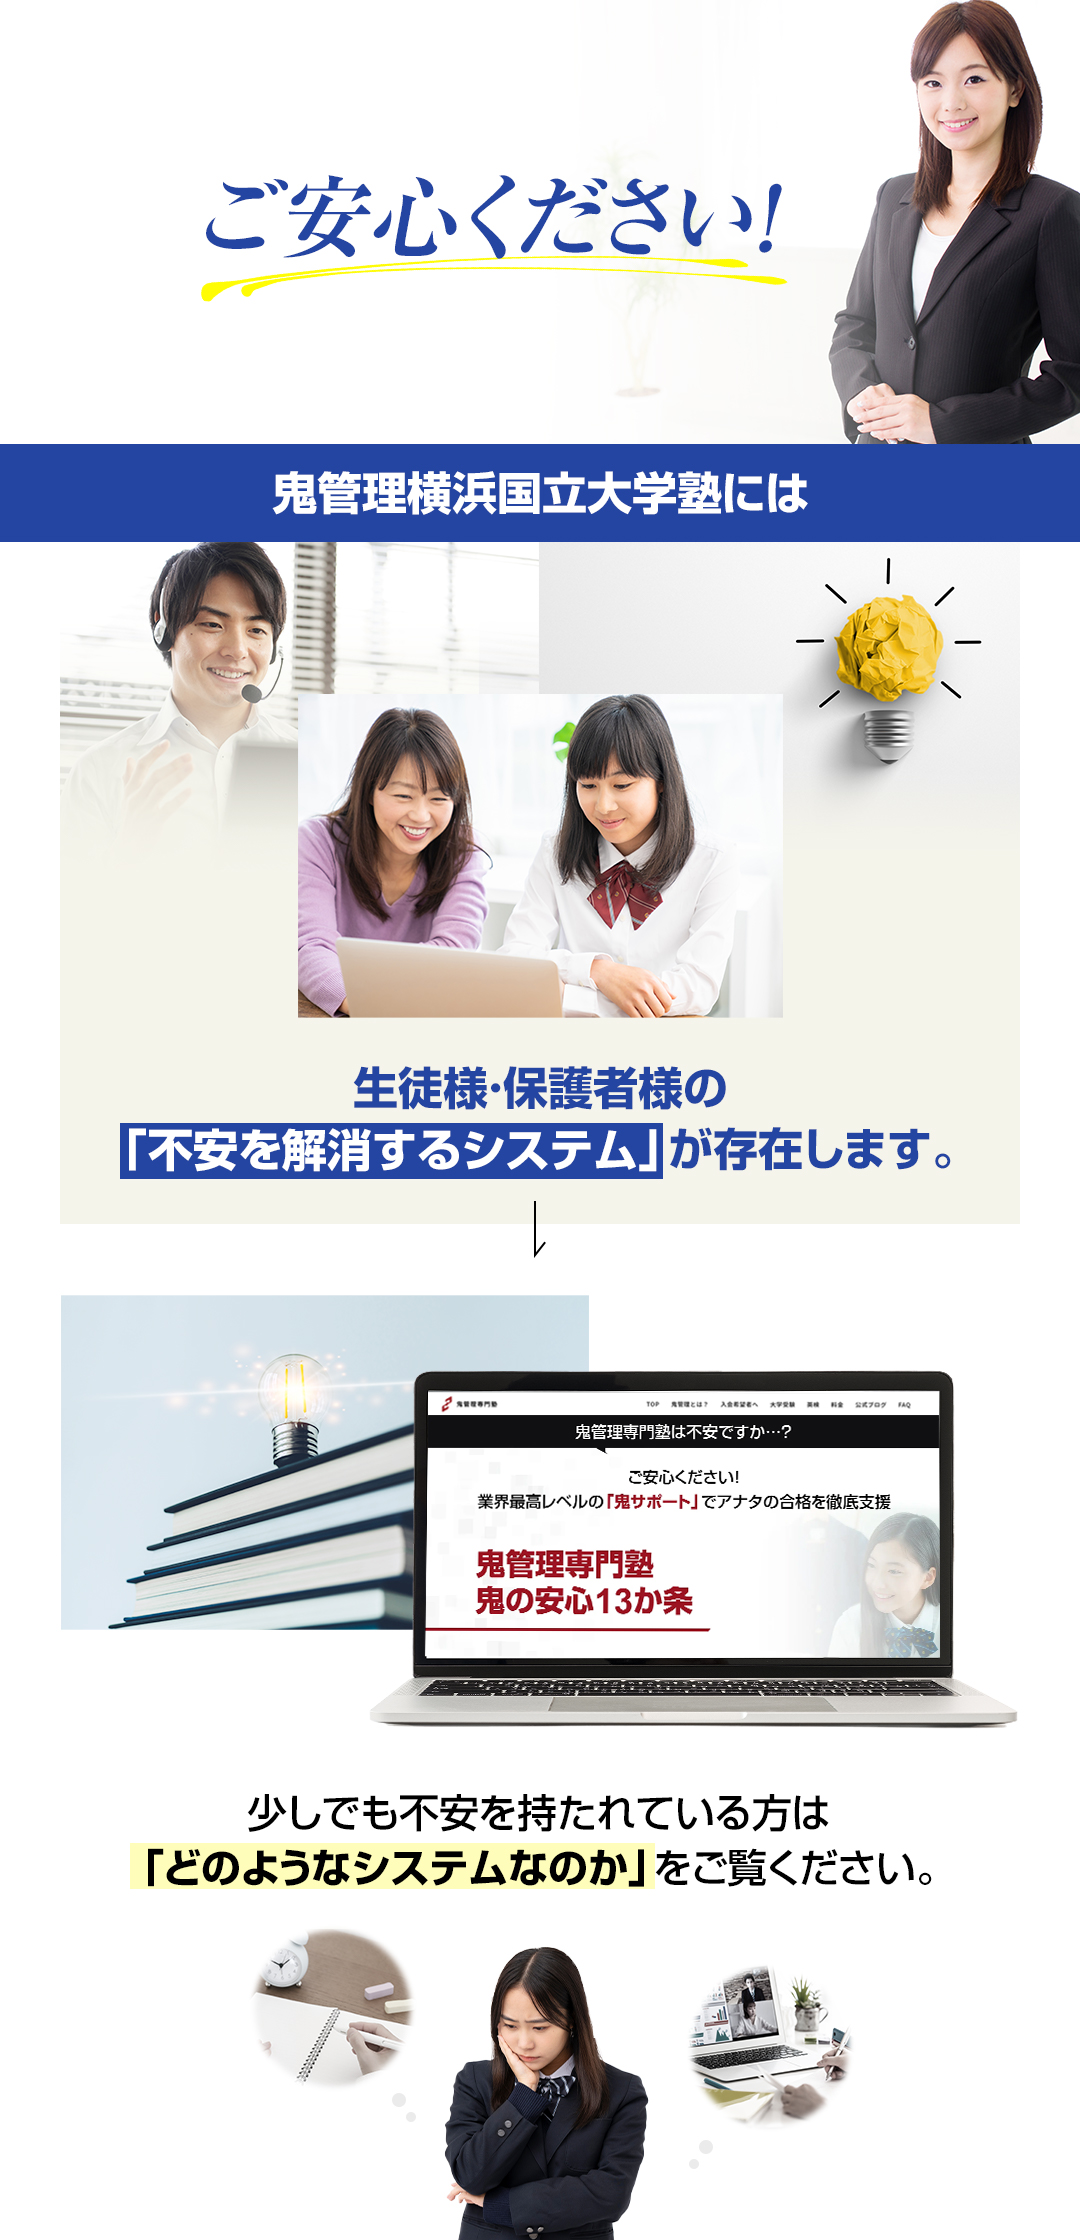 鬼管理横浜国立大学塾には生徒様・保護者様の「不安を解消するシステム」が存在します